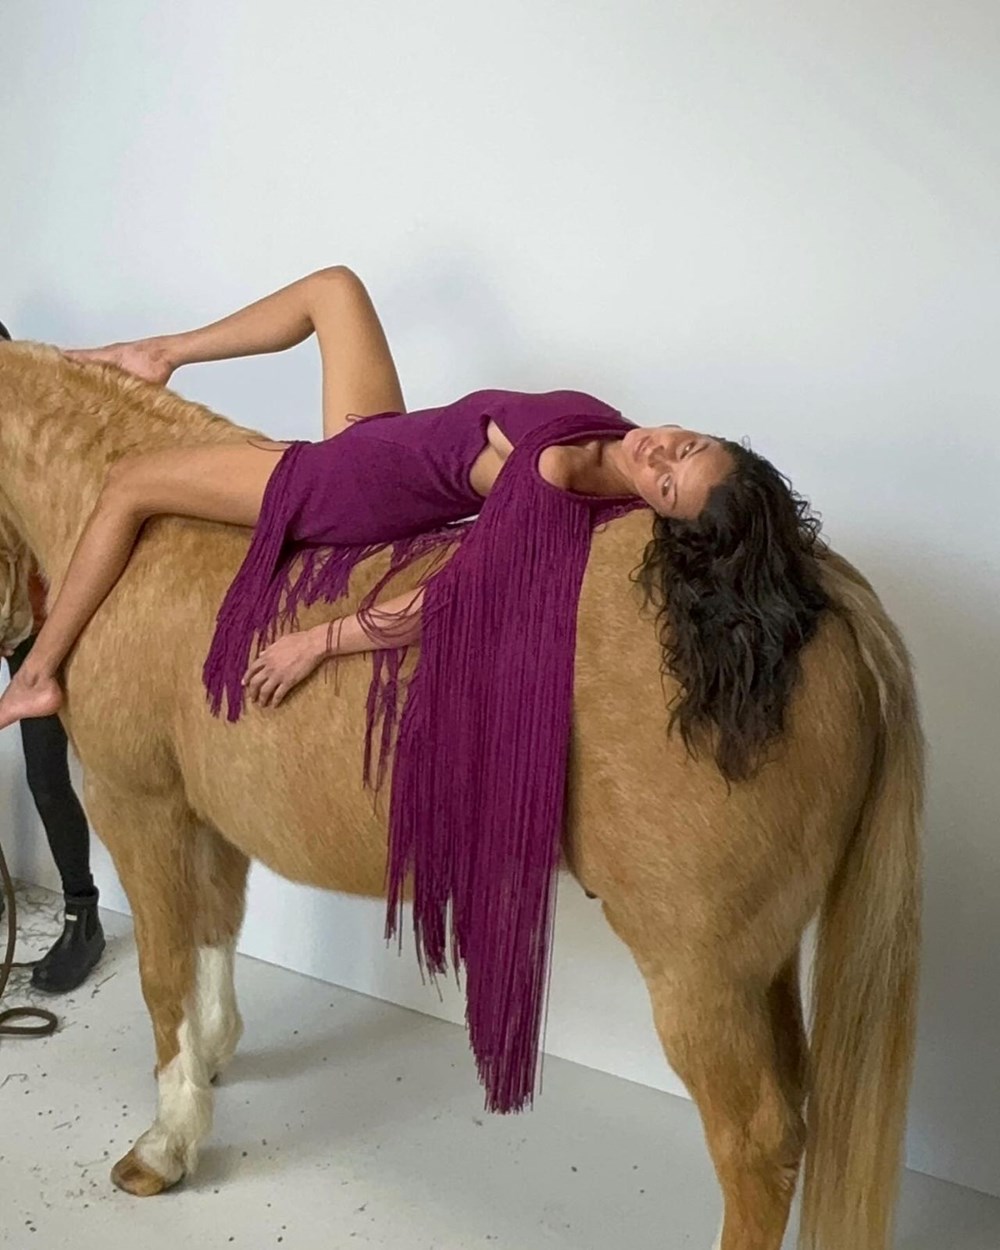 At üzerinde poz veren Bella Hadid tepki çekti - 4